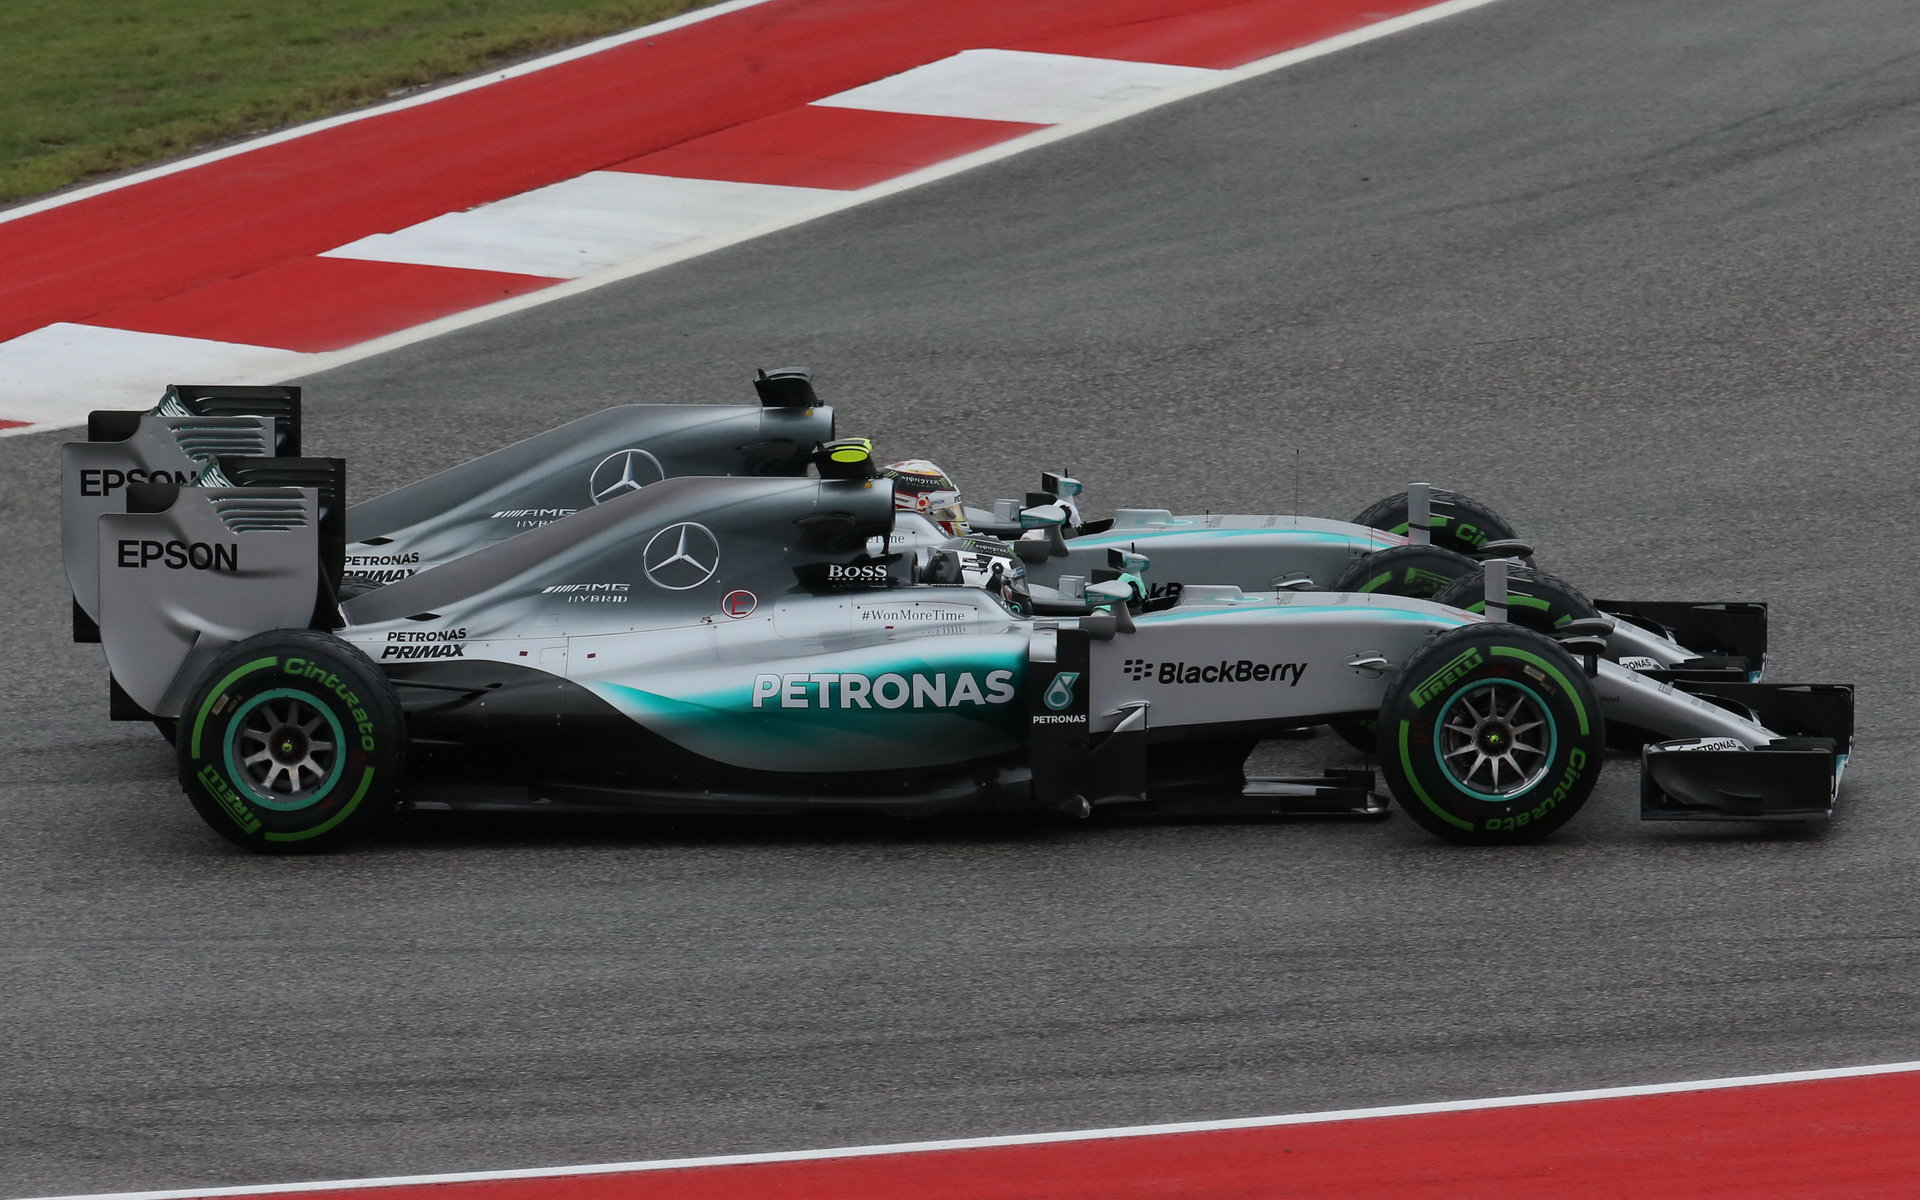 Hamilton v první zatáčce po startu vyváží Rosberg na okraj dráhy a dochází ke střetu